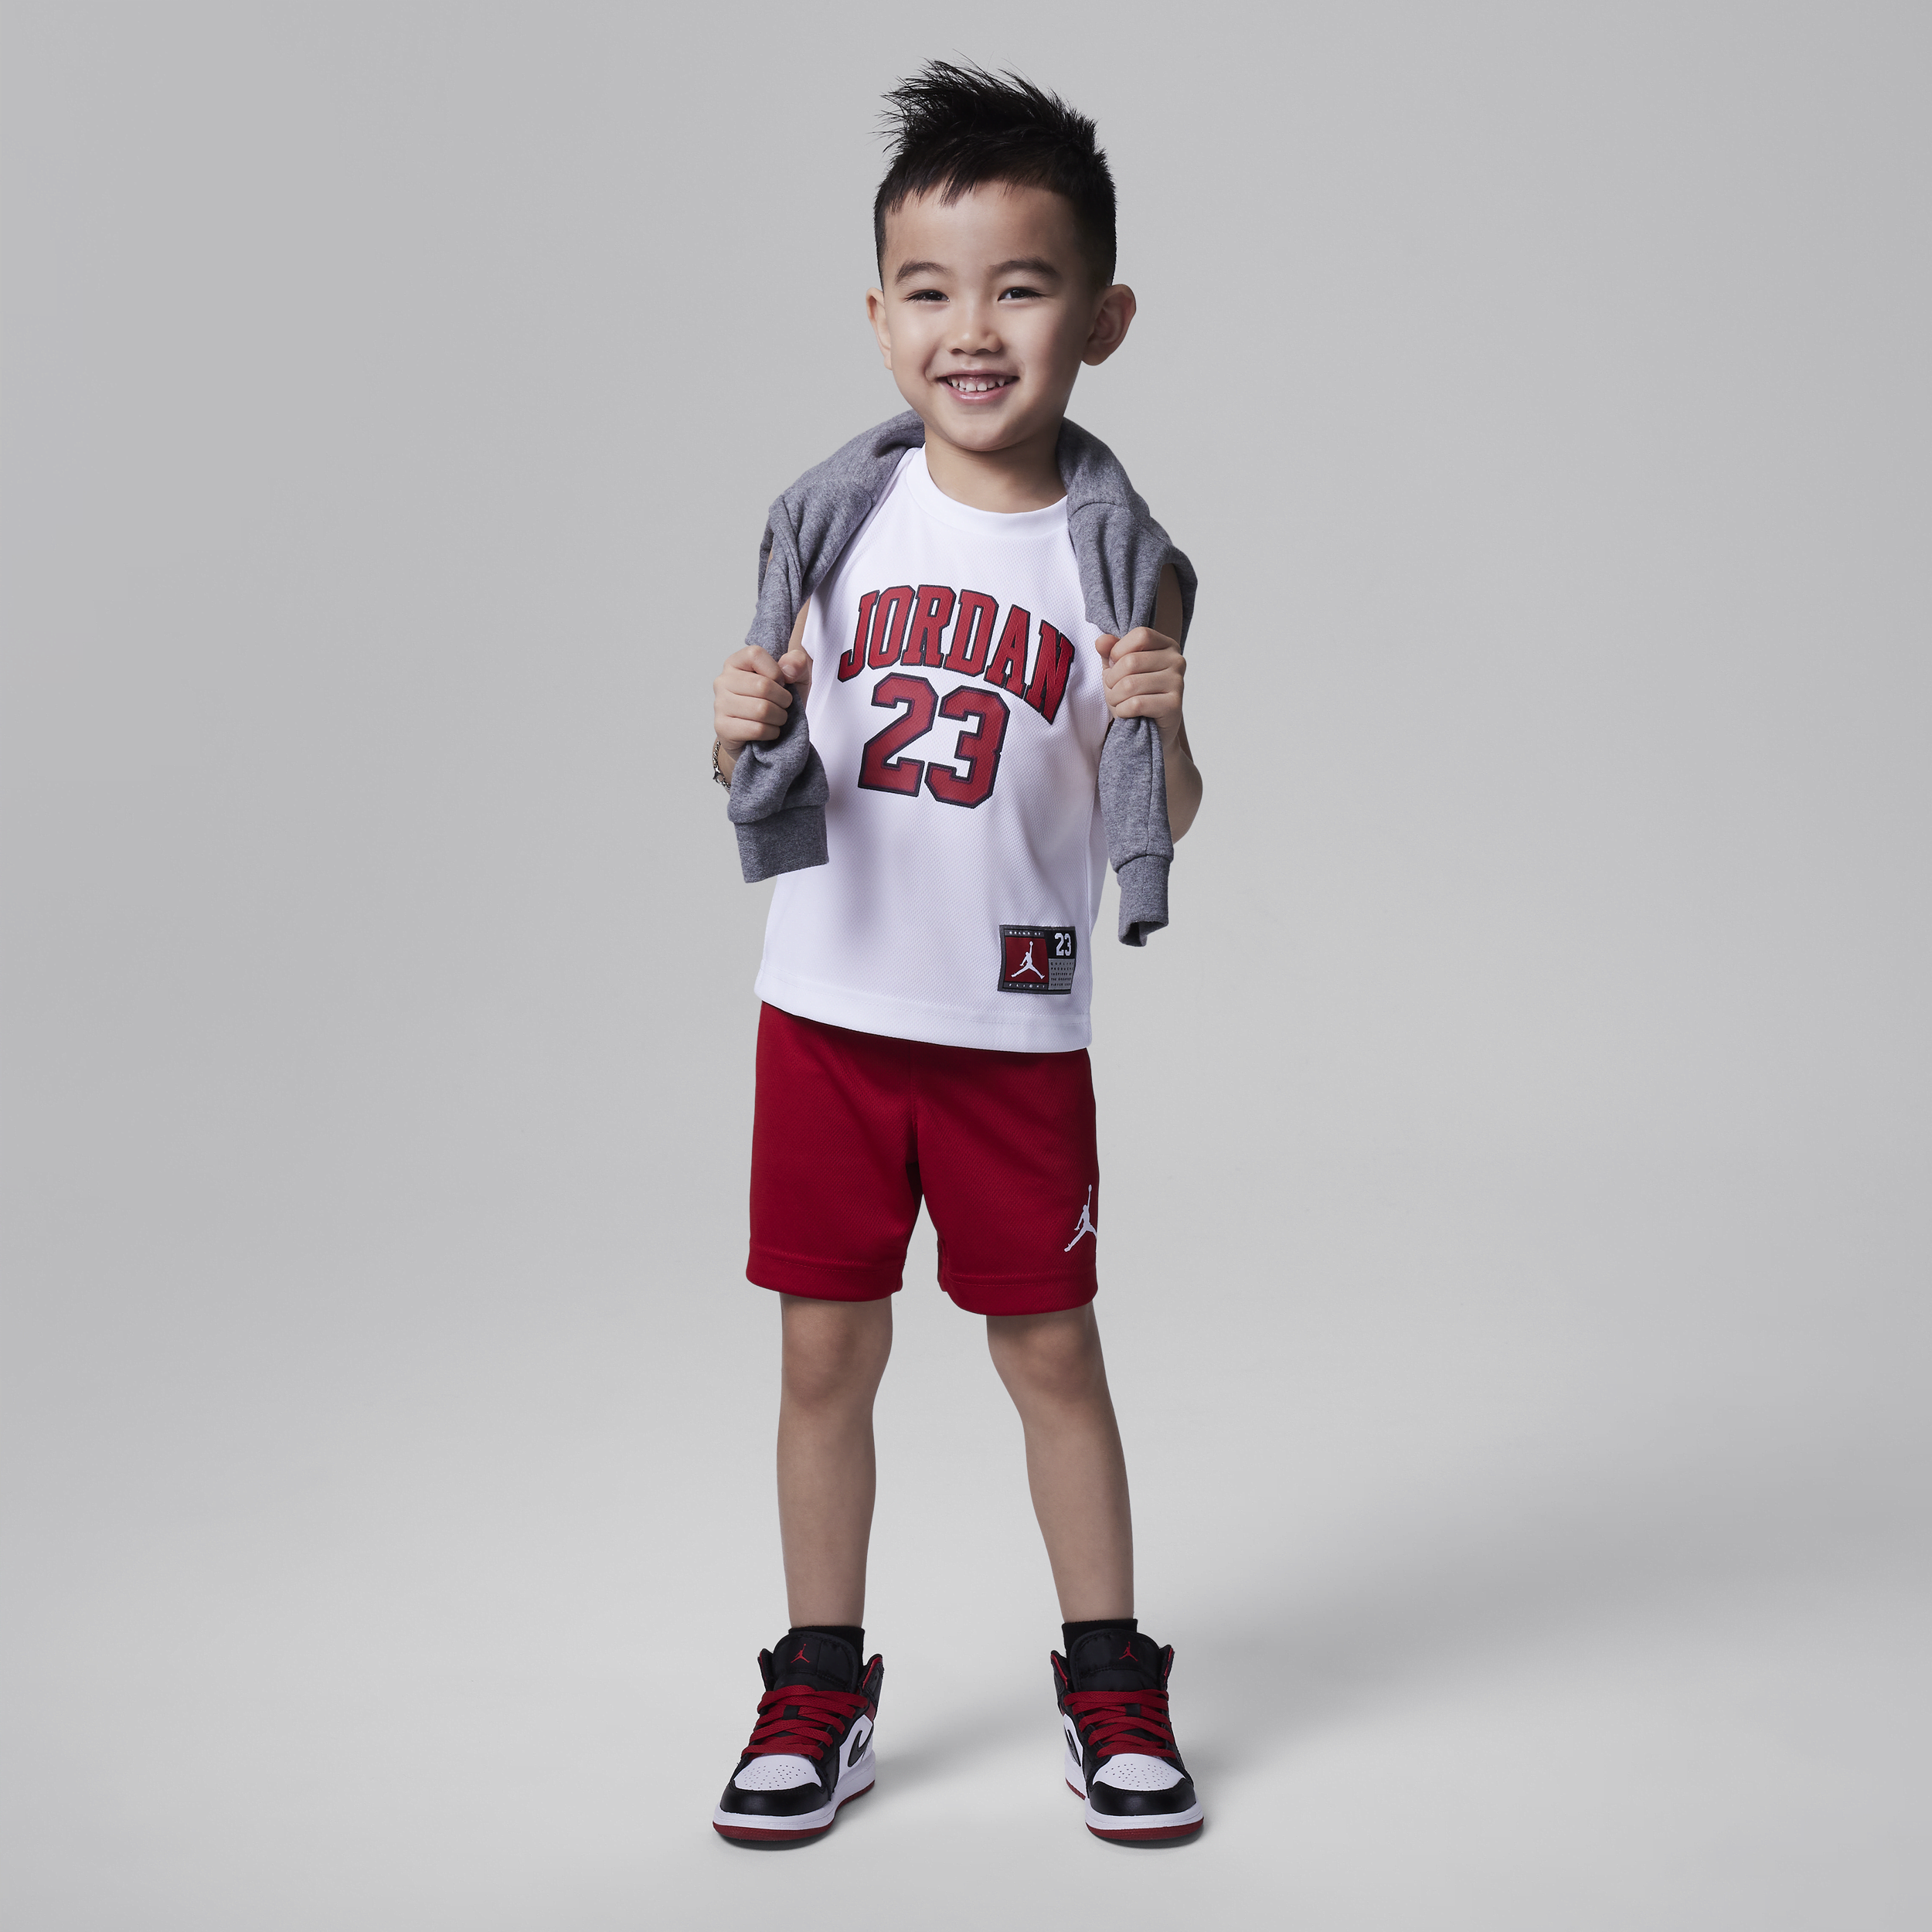 Jordan Babies' 23 Jersey Toddler 2-piece Jersey Set In Red